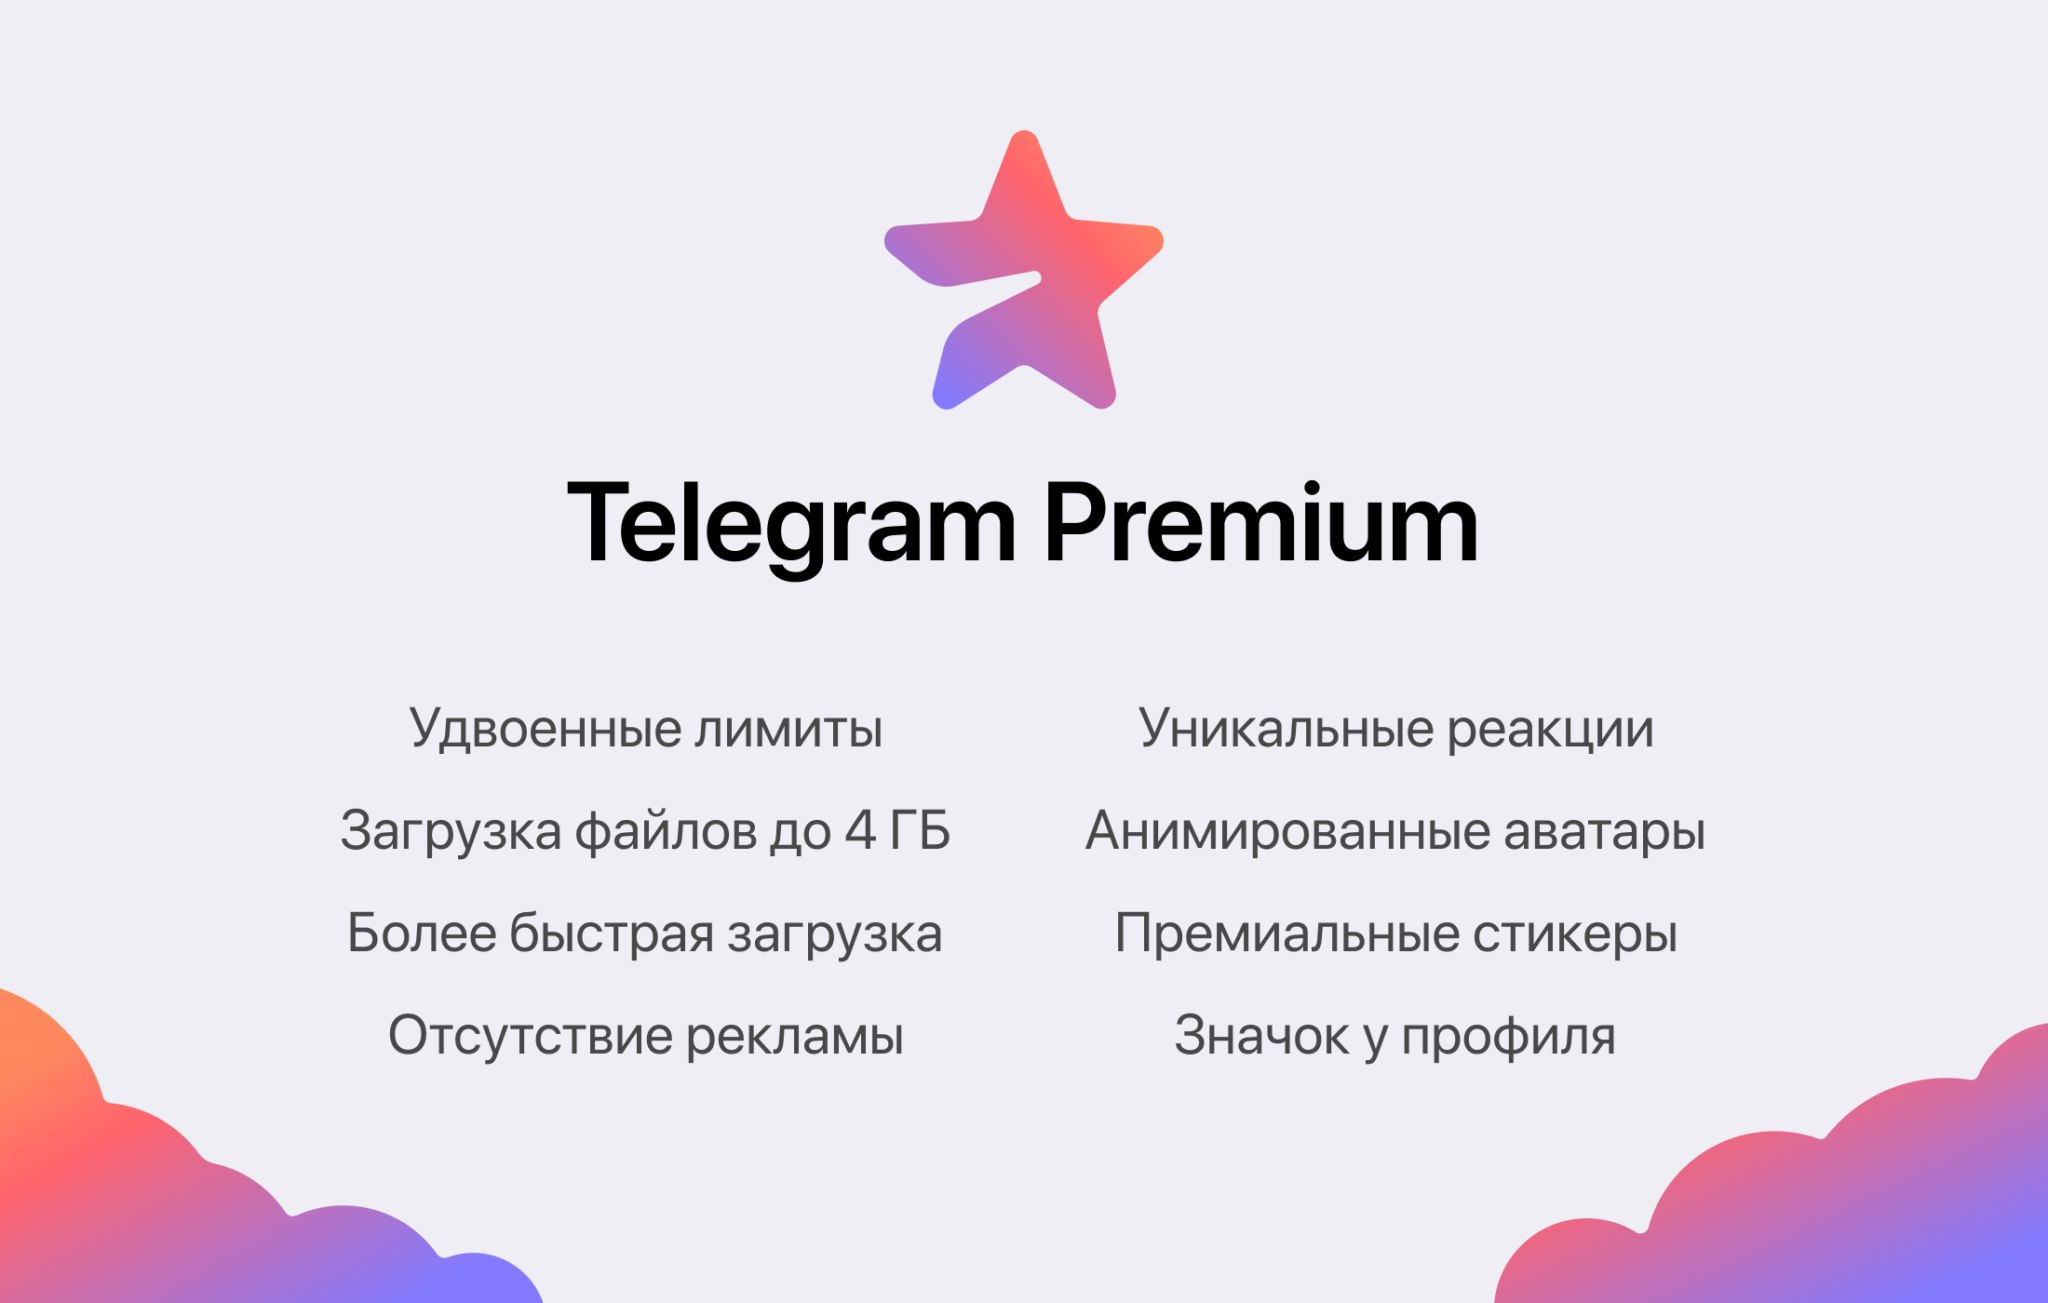 Бесплатный телеграмм премиум можно получить. Telegram Premium. Телеграм премиум логотип. Платная подписка в телеграм. Премиум подписка телеграм.